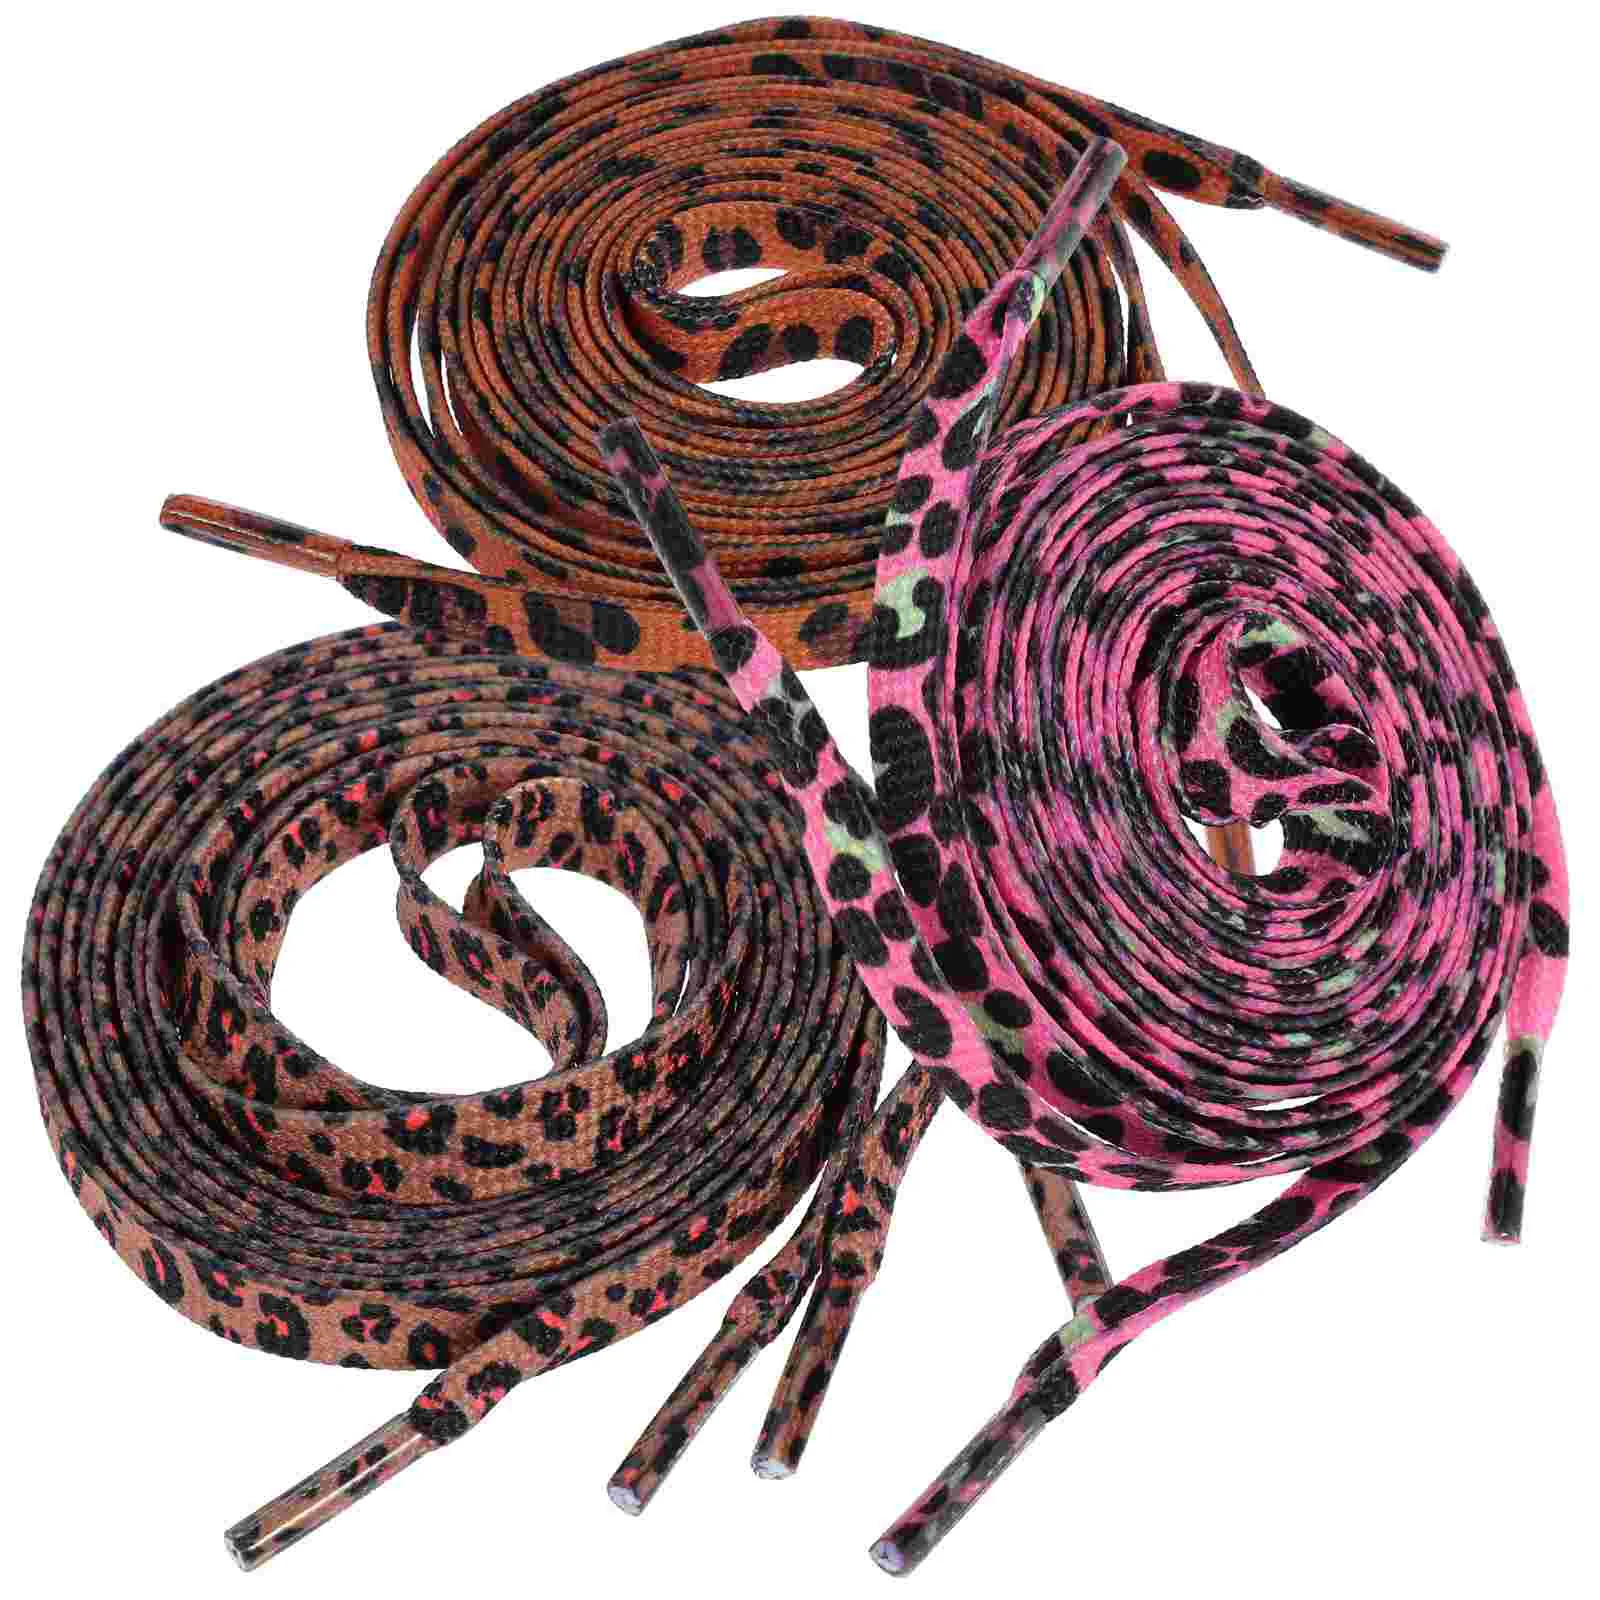 Cordones con estampado de leopardo para zapatillas de deporte, cordones decorativos planos de poliéster, 3 pares